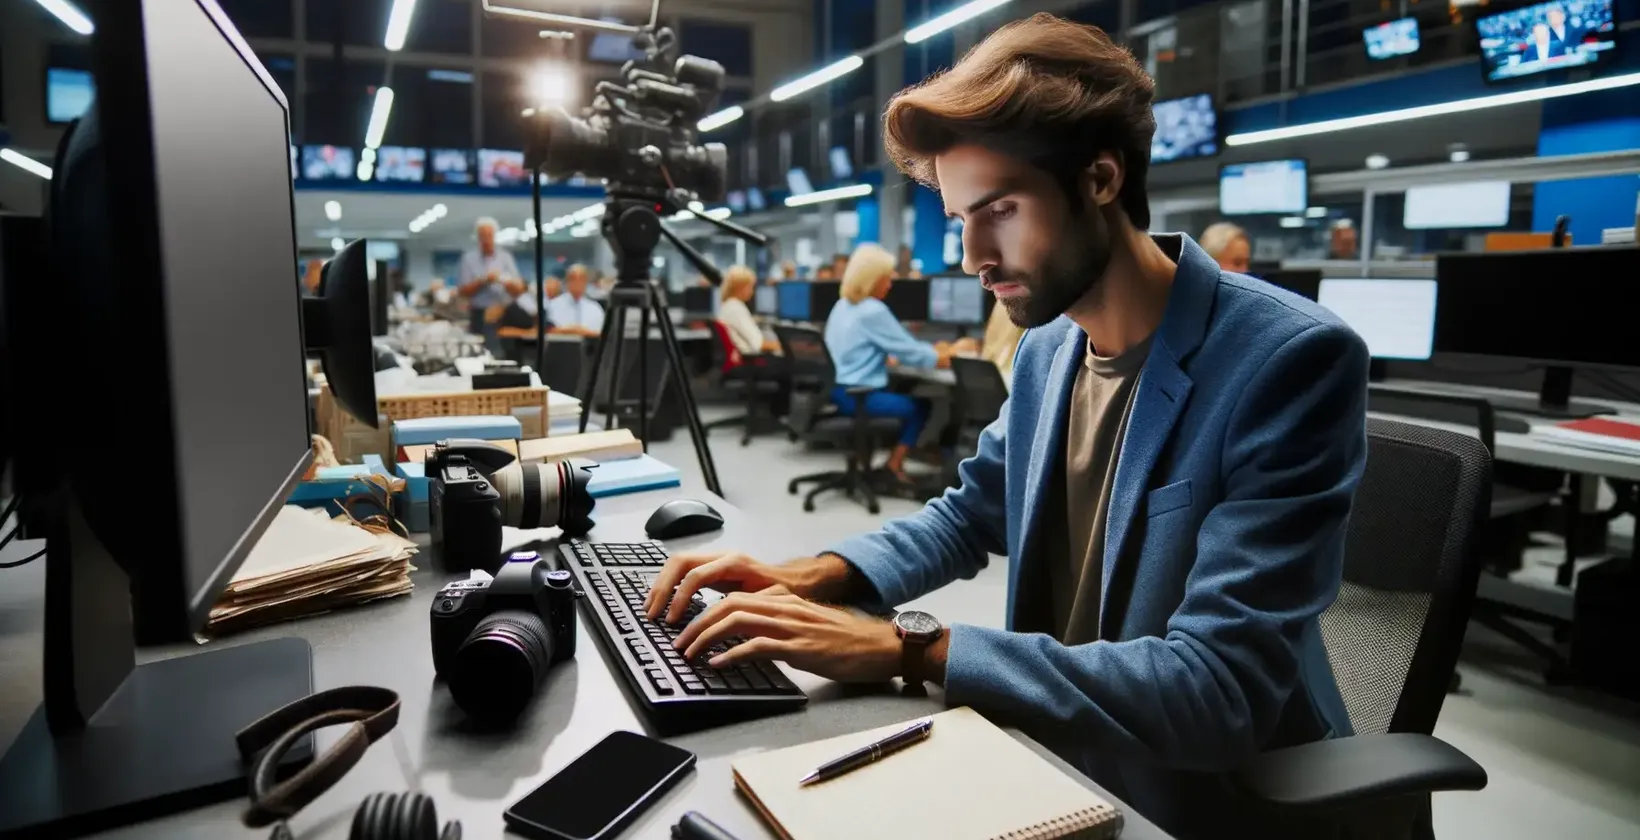 Jornalista em uma redação movimentada usando um software de transcrição em seu computador.
